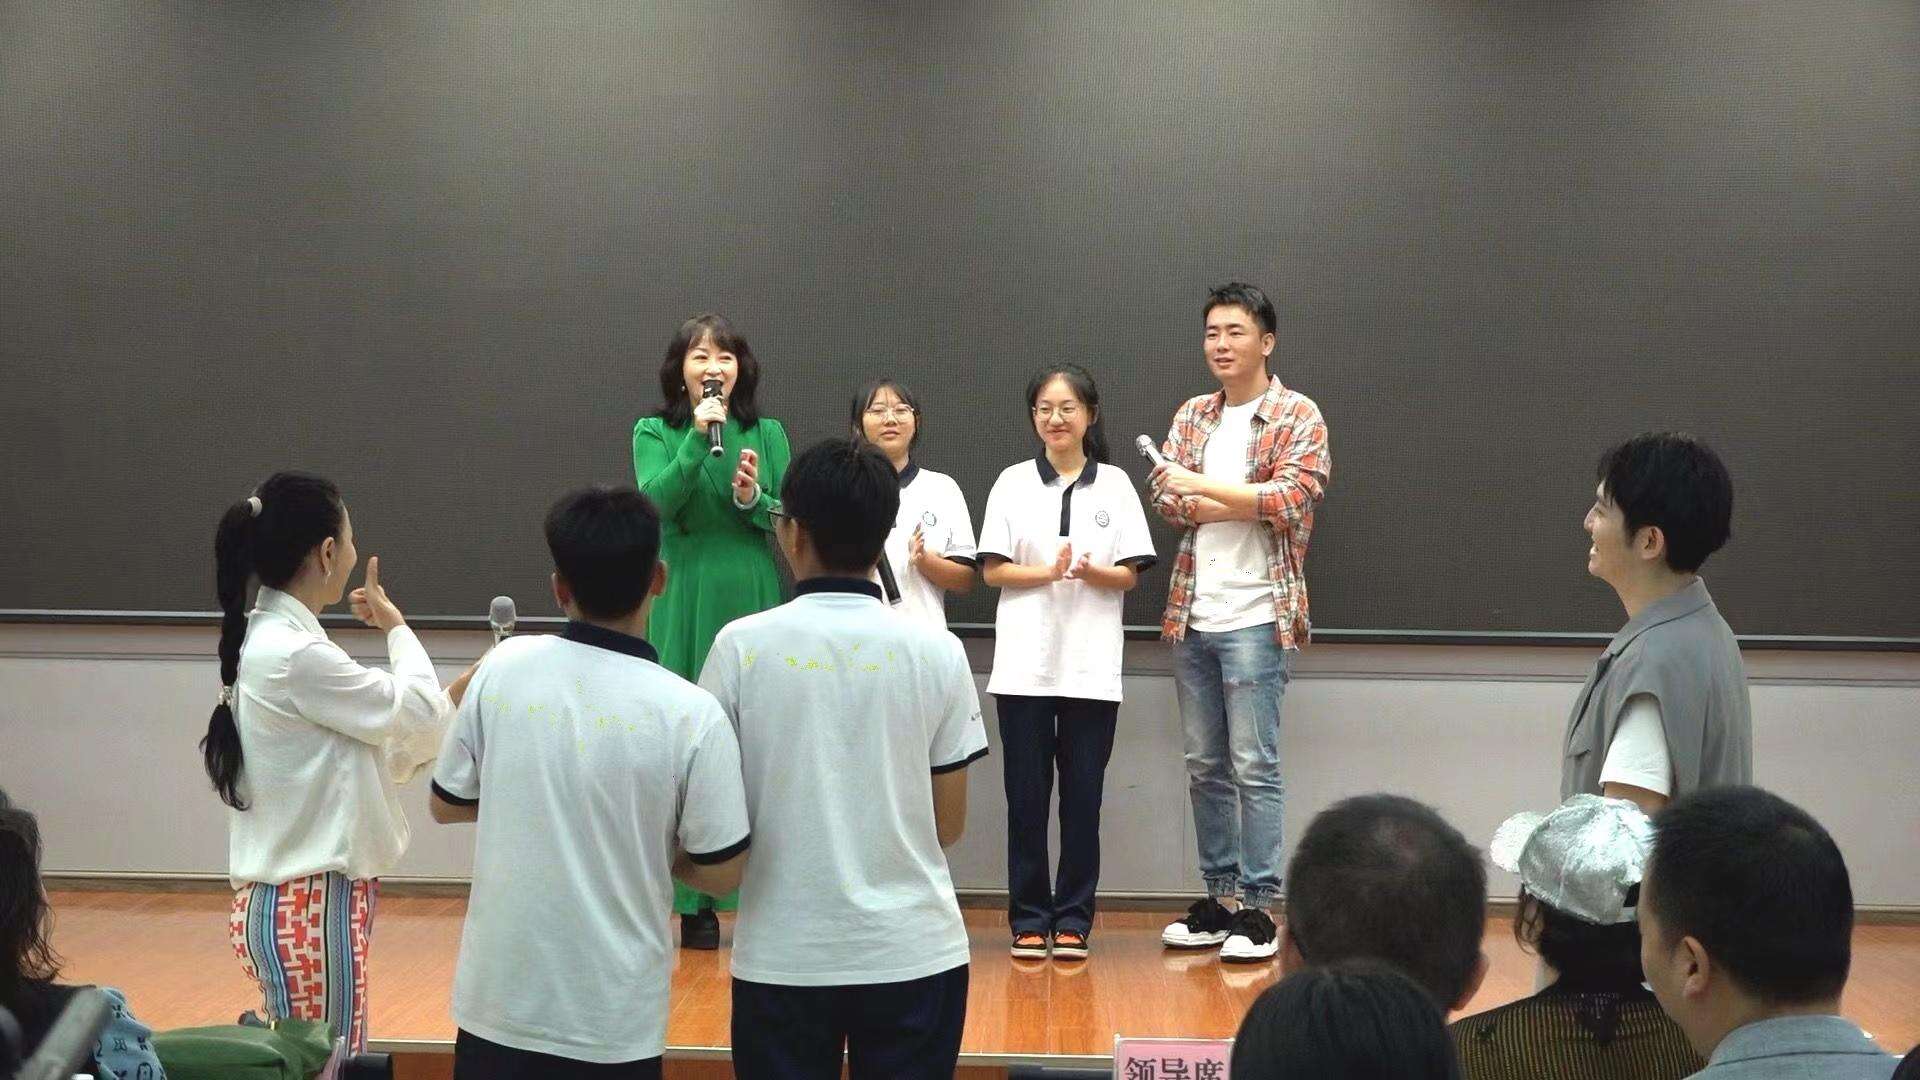 中国视协走进临沧技师学院并举办小分队演出联欢活动